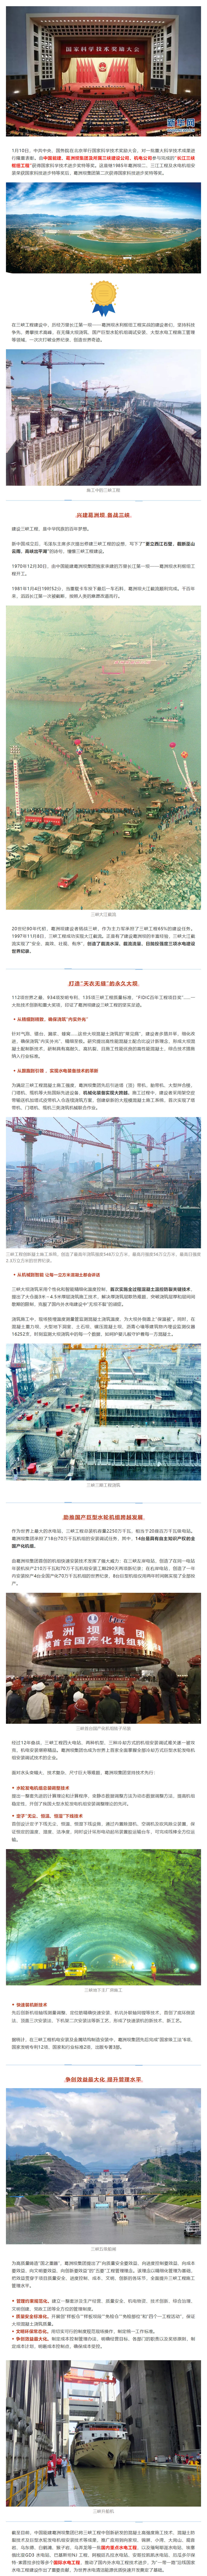 中国能建葛洲坝集团承建的三峡工程获国家科学技术进步奖特等奖